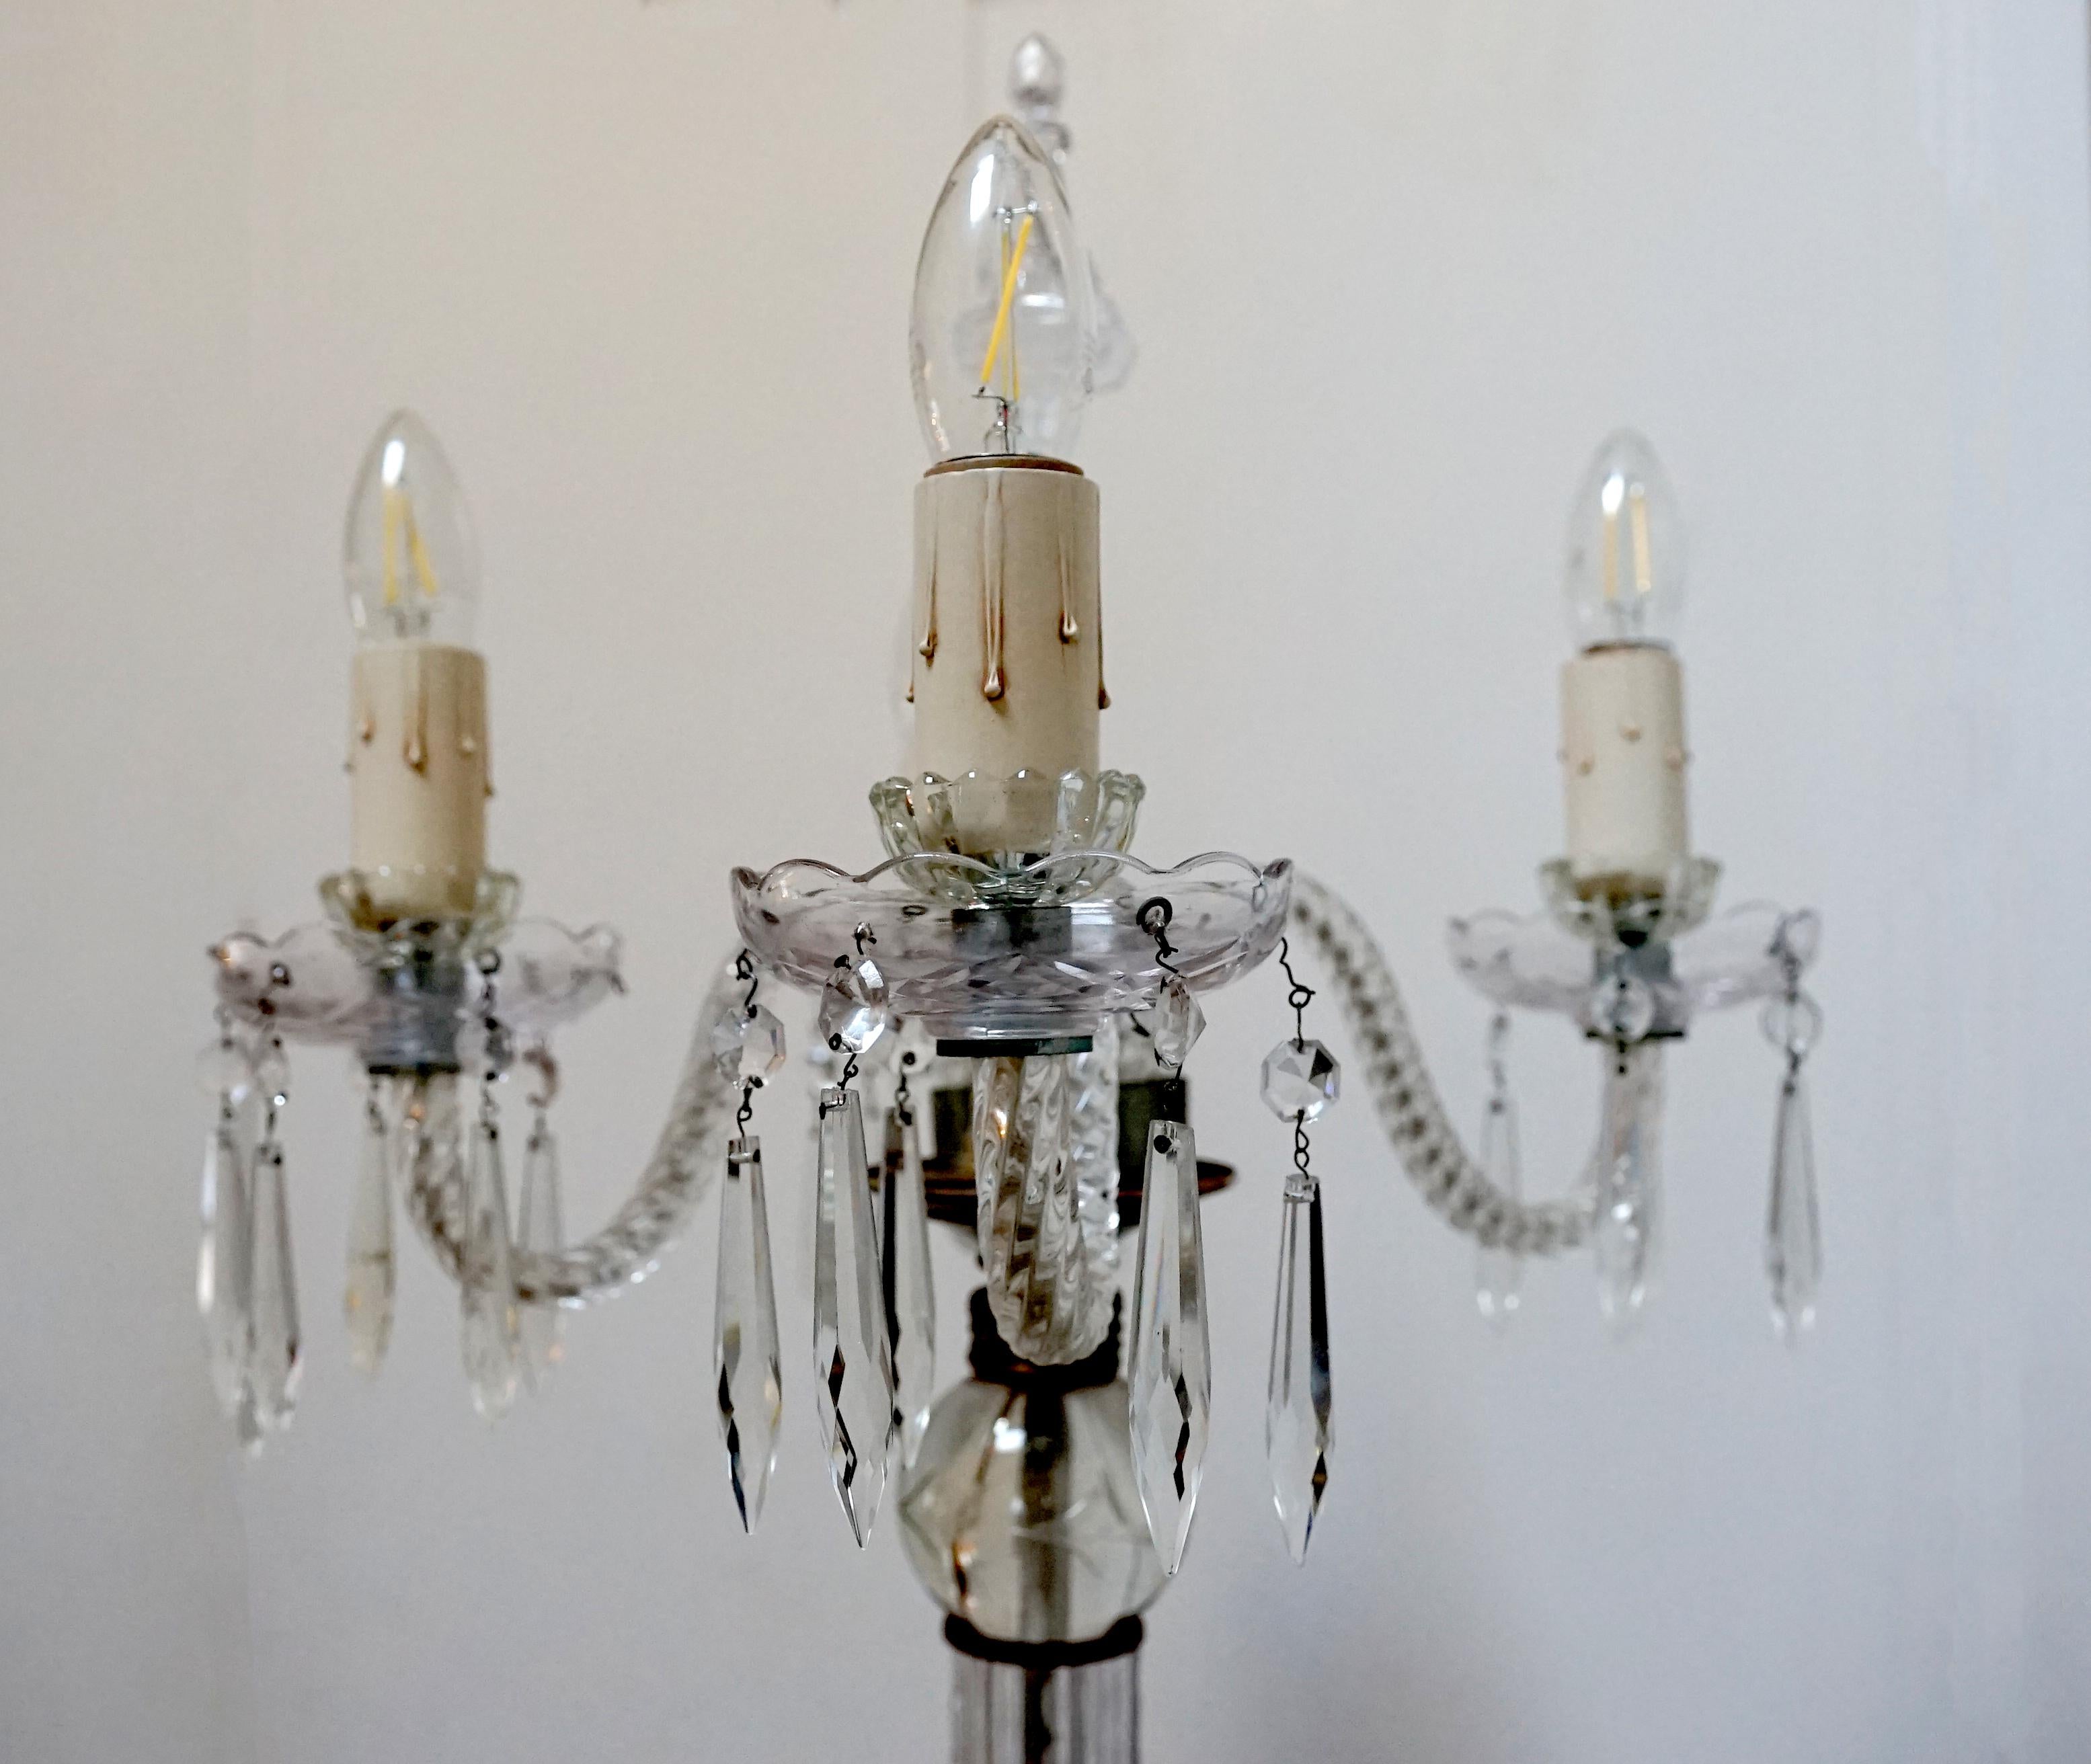 Il s'agit d'un lustre vénitien vintage en verre soufflé à la main, accompagné d'un lampadaire à quatre lumières, vers 1920-1950. L'expert estime qu'il est unique et pourrait provenir de Murano. 
Cette pièce a une histoire. Il s'agit d'un projet de